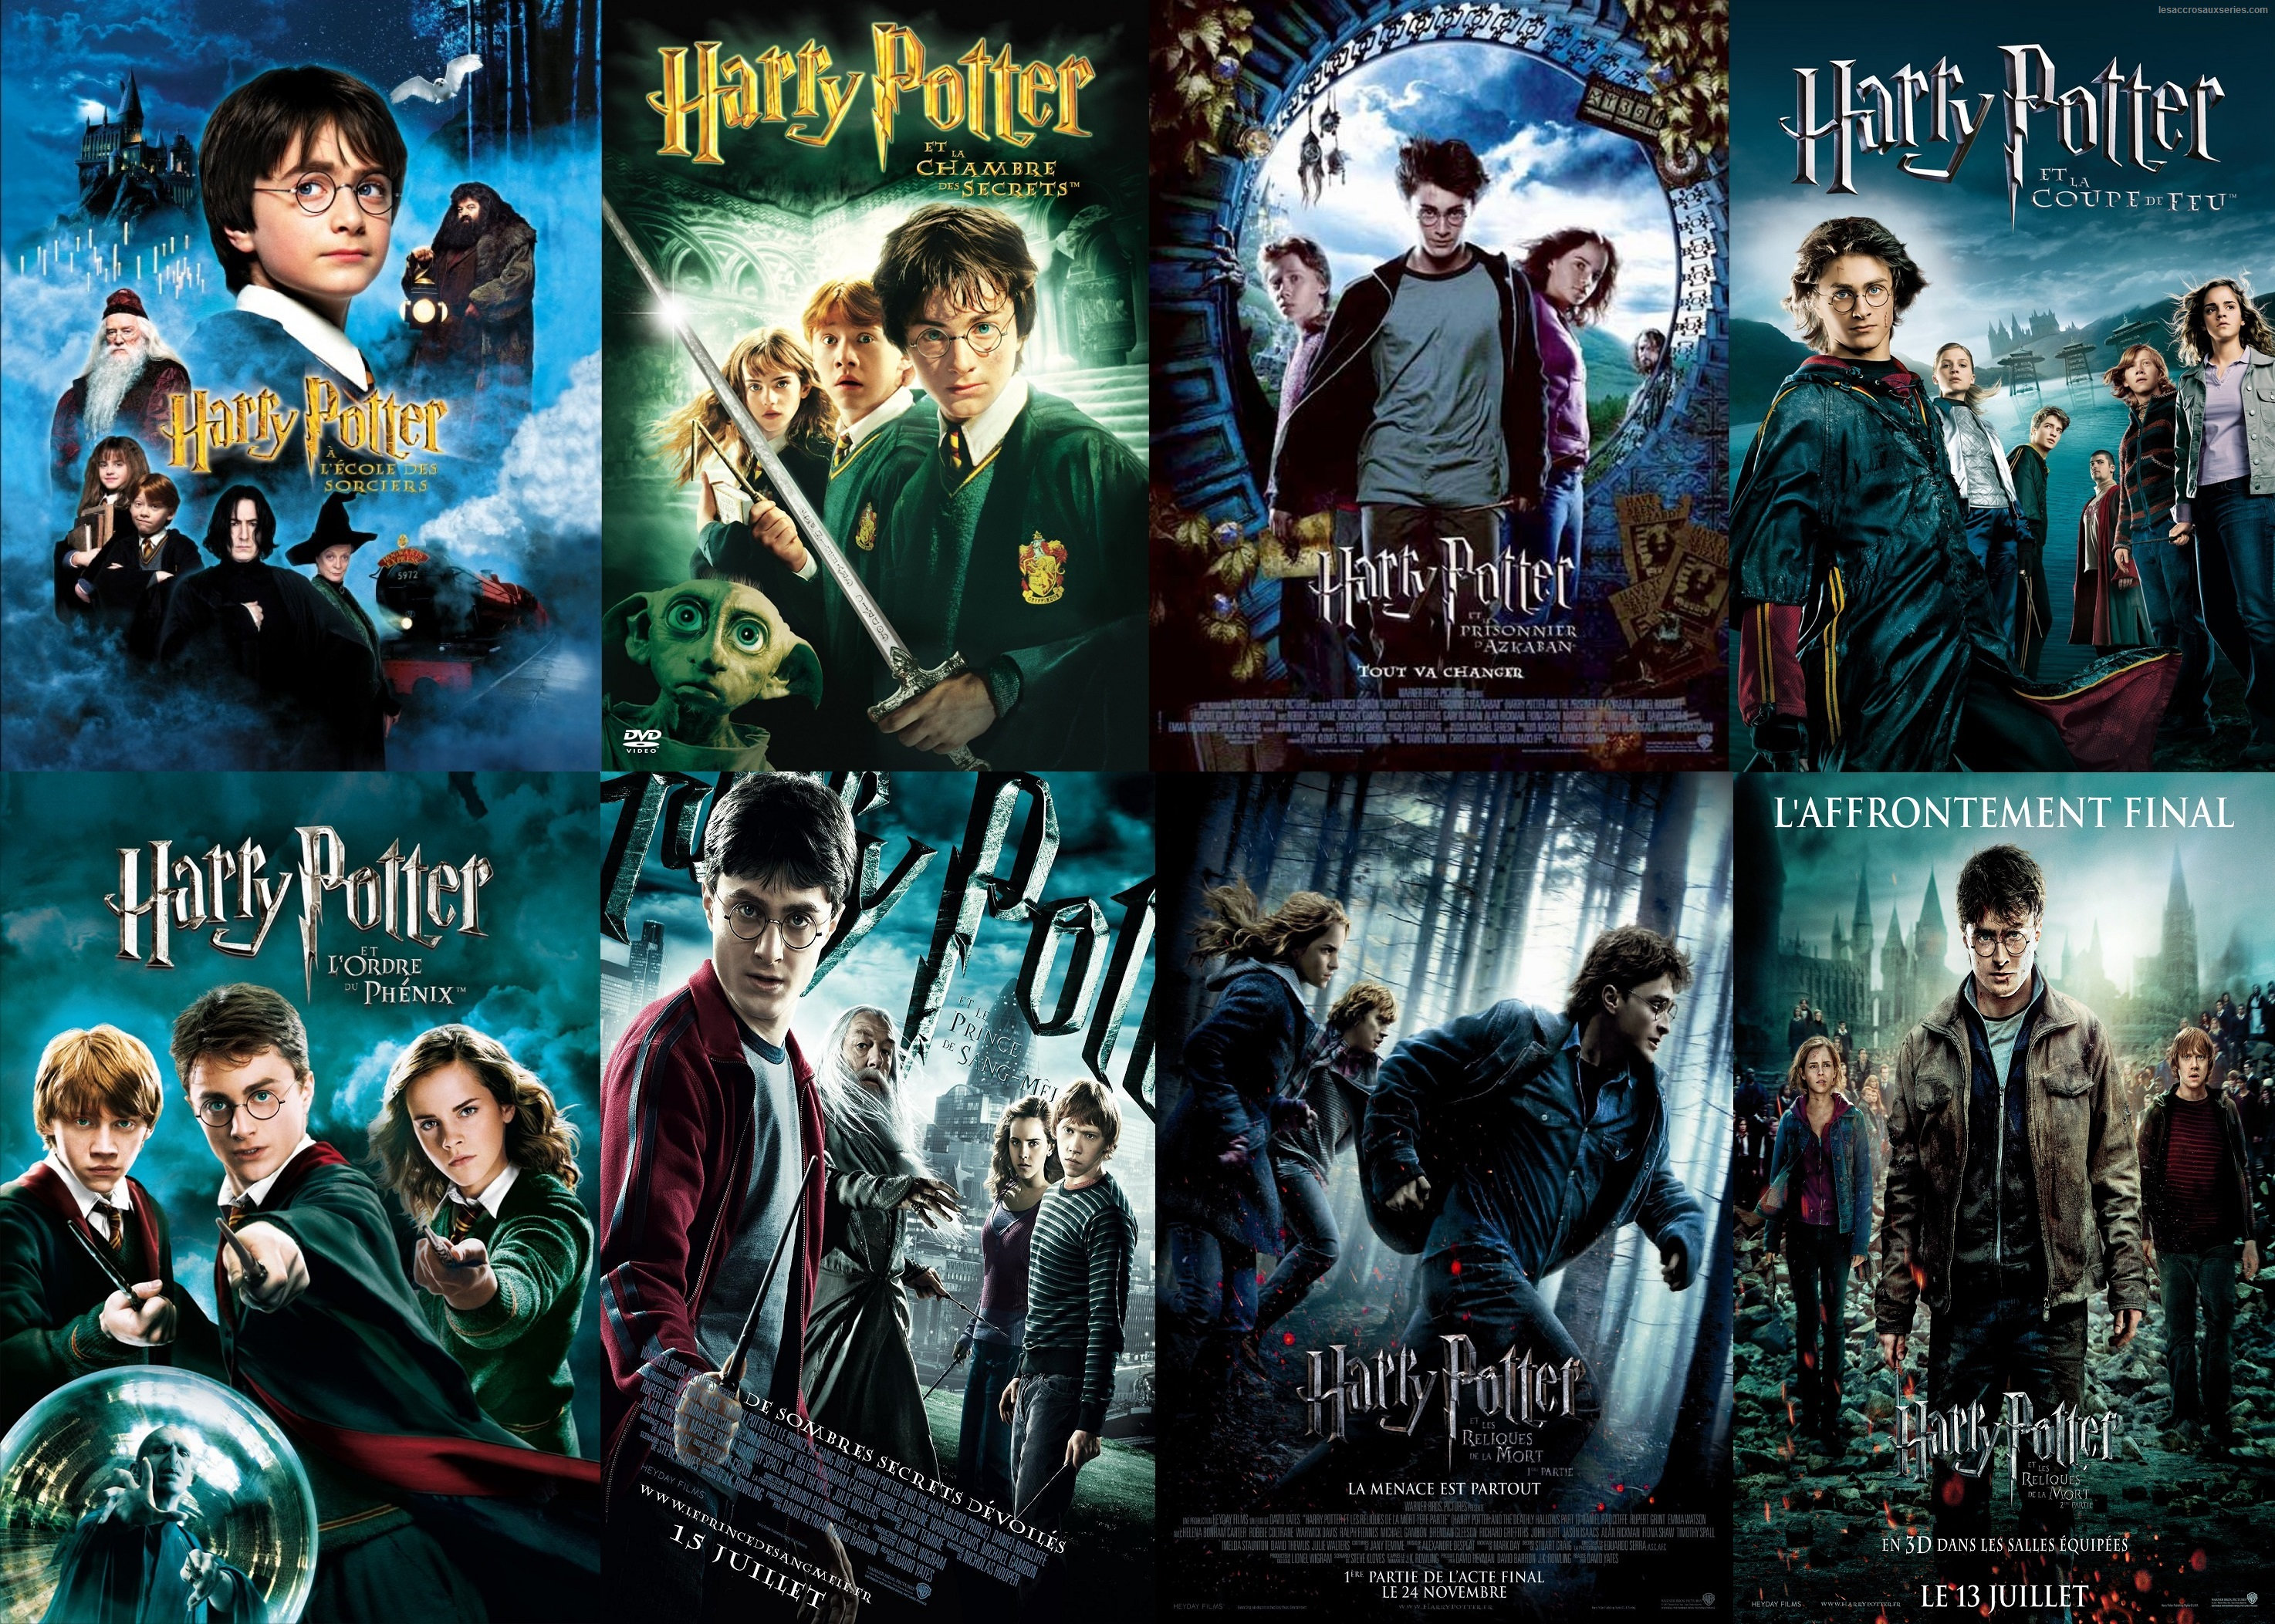 Harry Potter (intégrale) diffusés sur Canal + Family